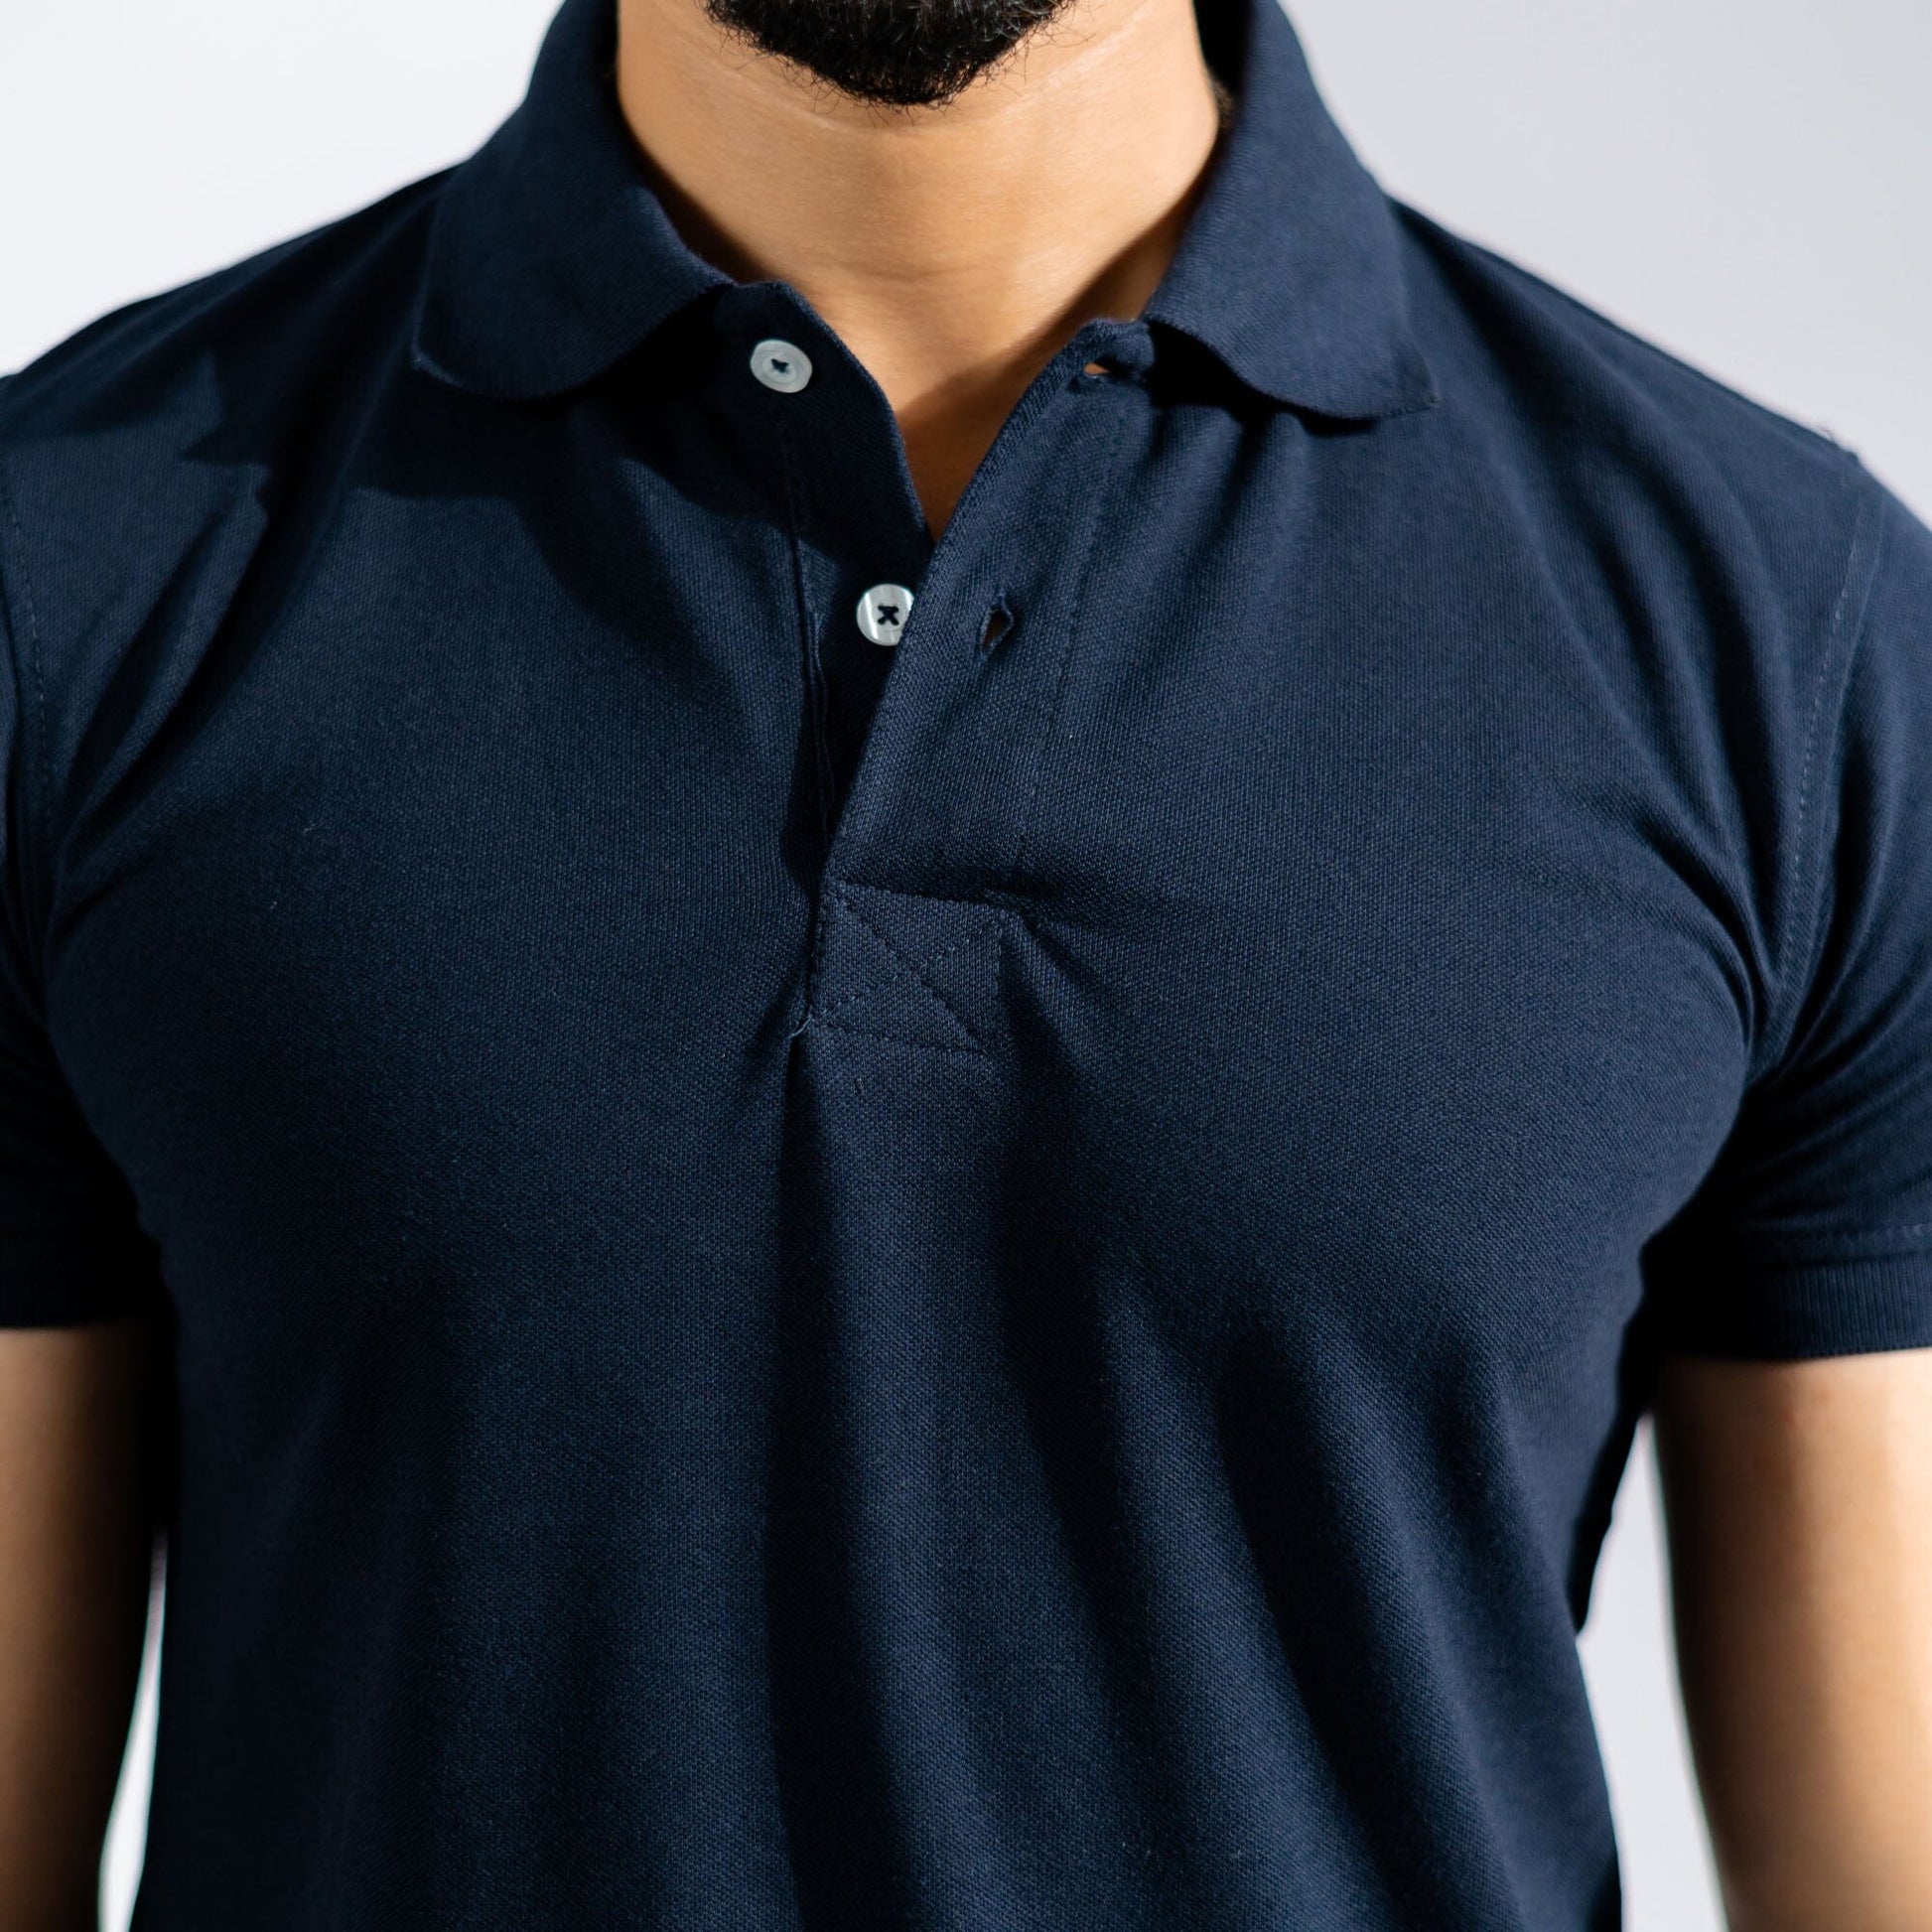 Polo Republica Men's Essentials Premium Short Sleeve Polo Shirt Men's Polo Shirt Polo Republica 